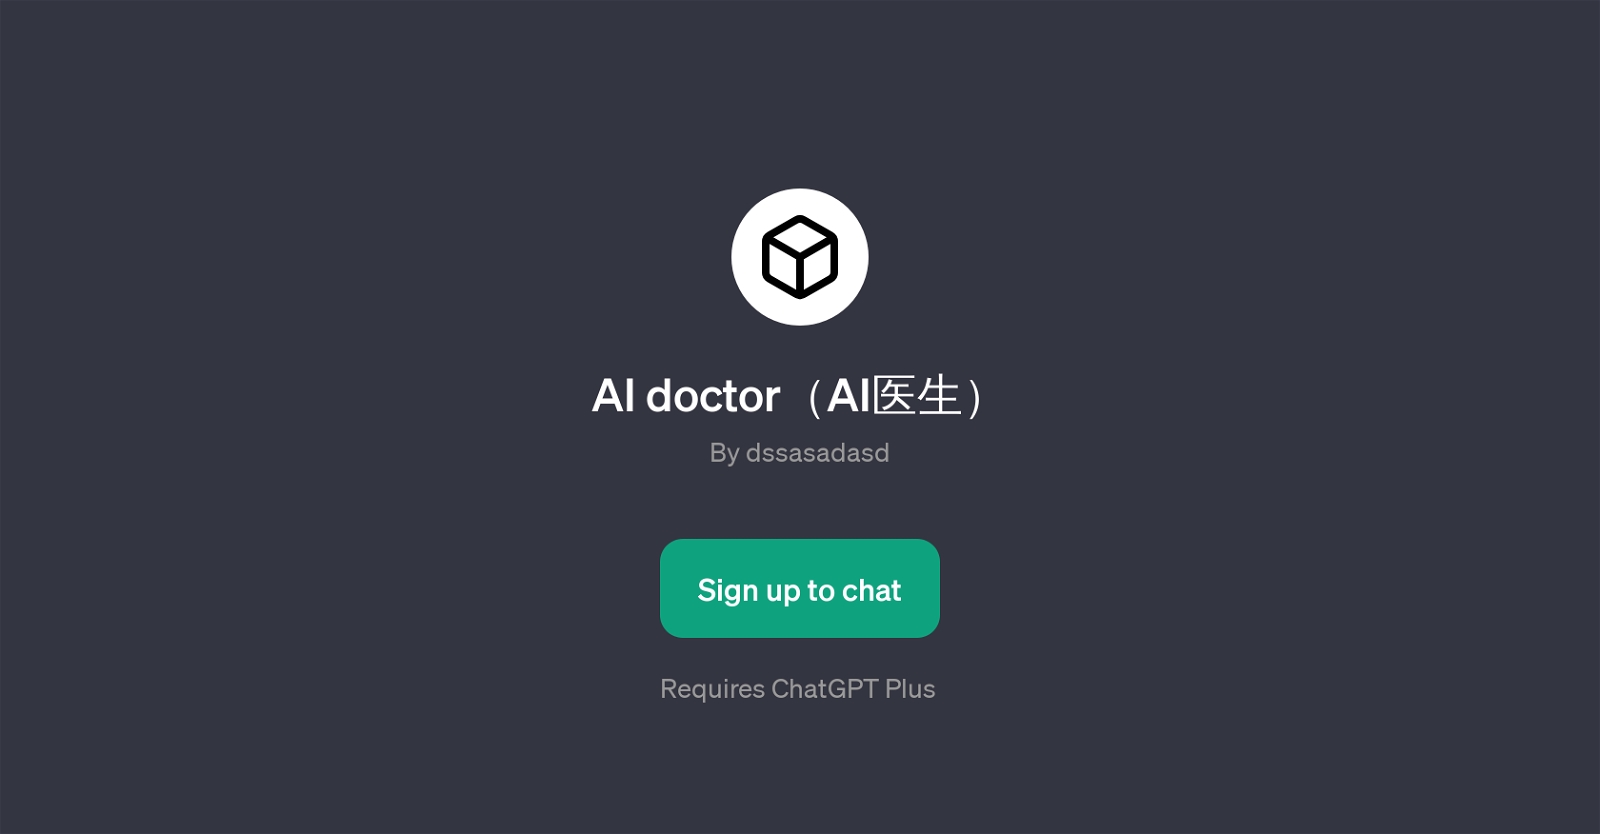 AI doctor website